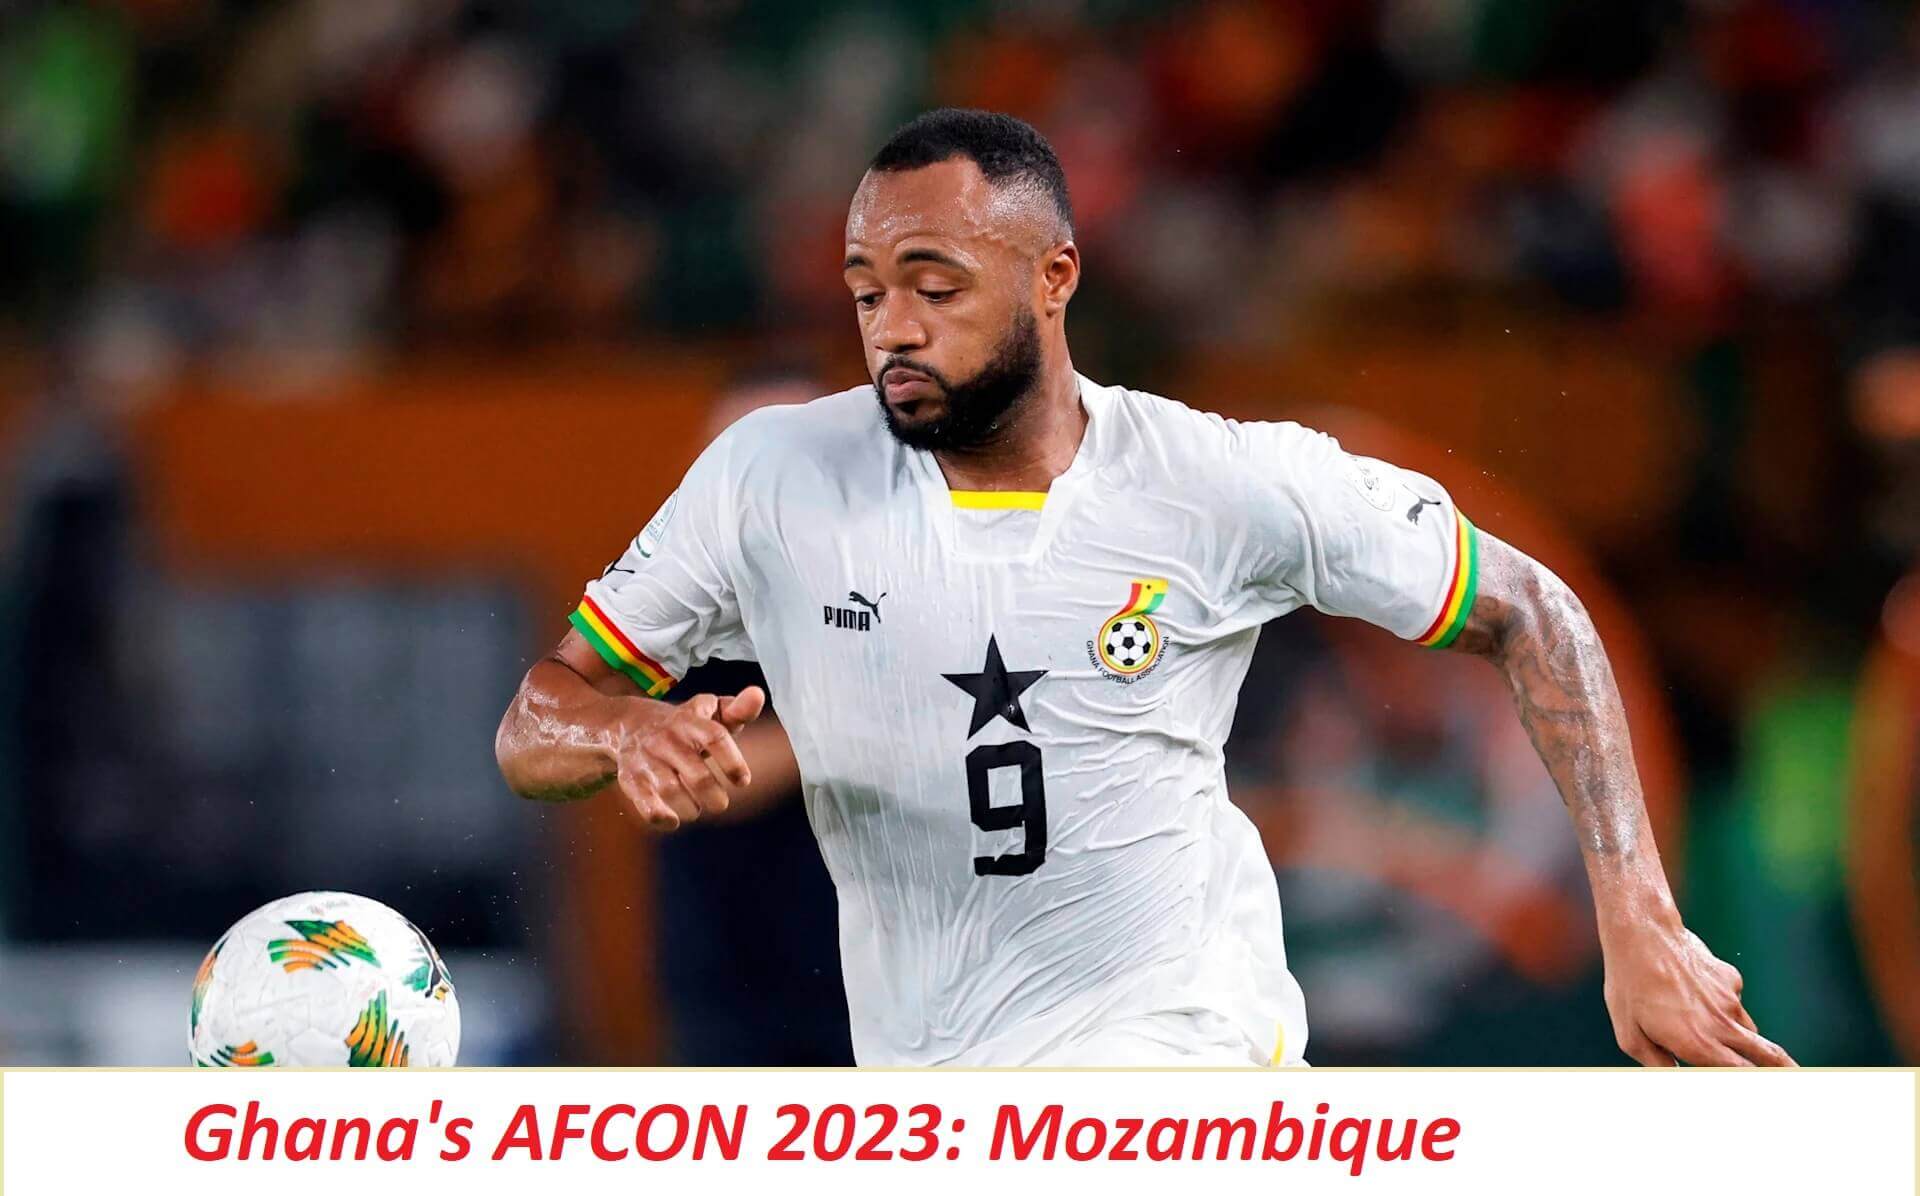 Ghana's AFCON 2023